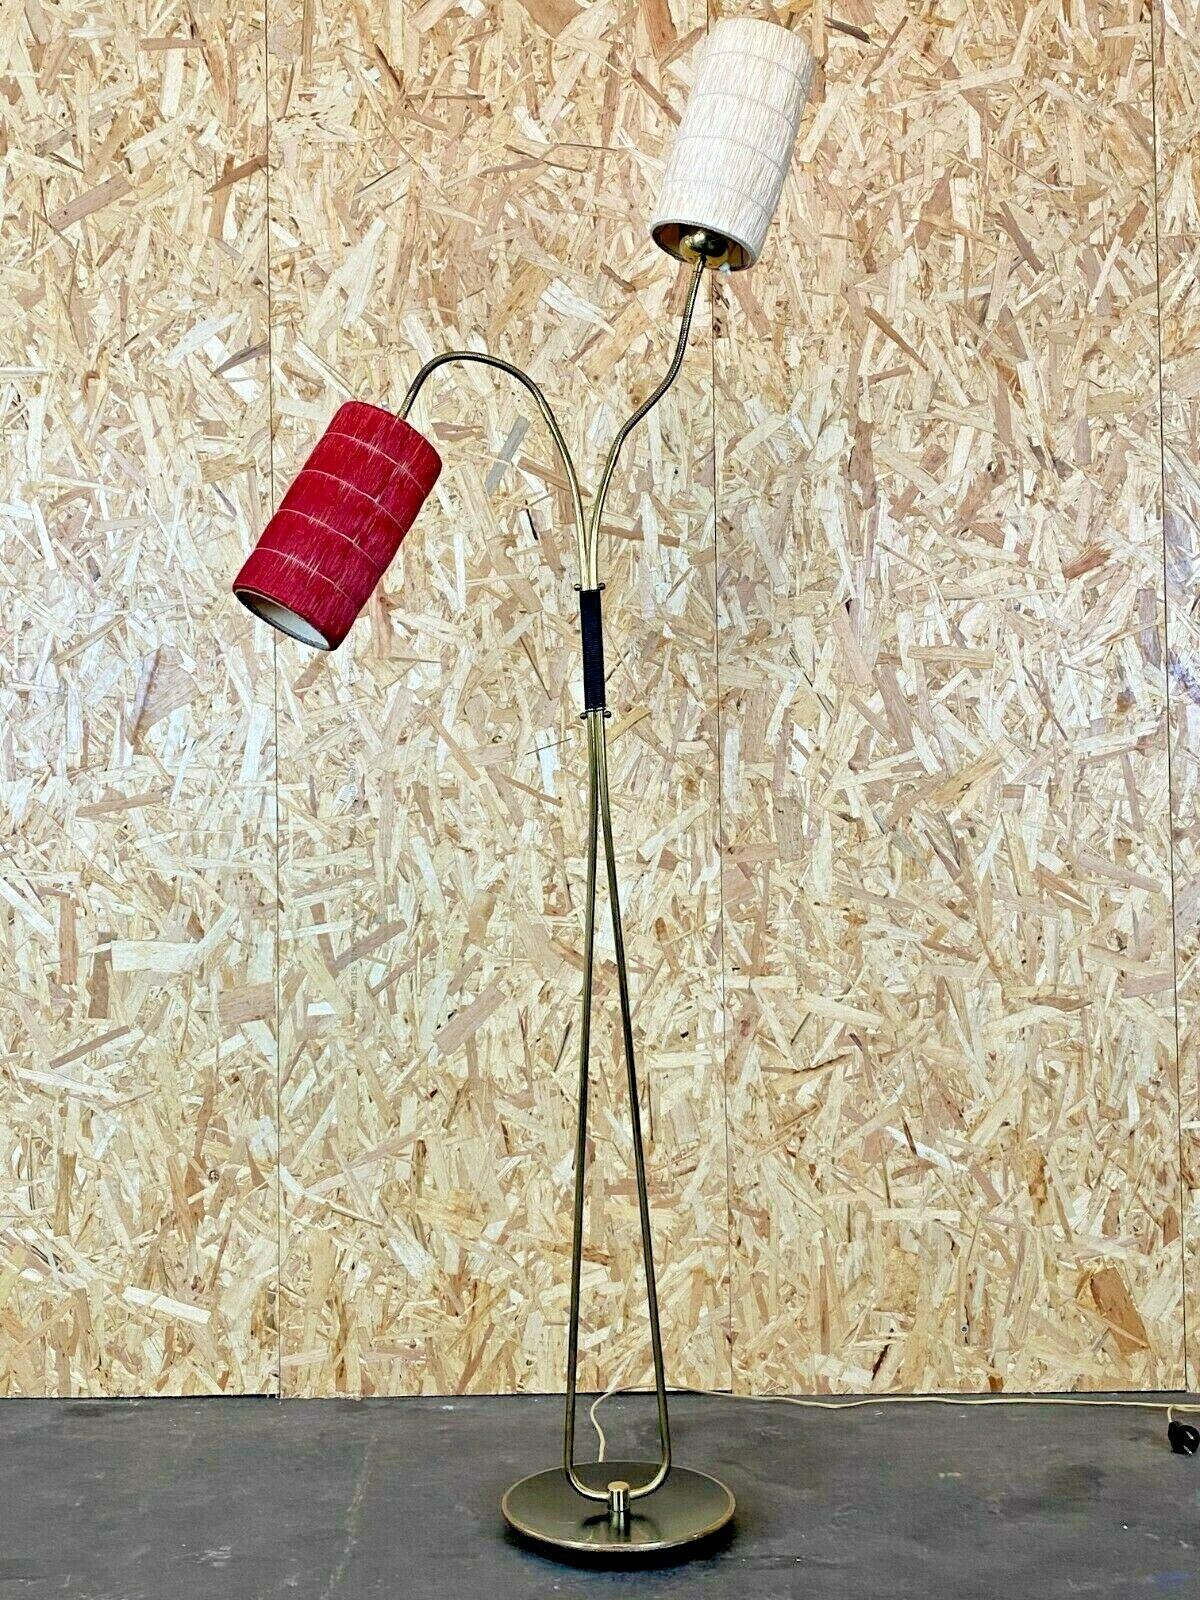 lampe des années 50 et 60 lampe de sol lampe de sac lampe de design du milieu du siècle 50s

Objet : lampadaire

Fabricant :

État : bon

Âge : environ 1960-1970

Dimensions :

70cm x 25cm x 170cm

Autres notes :

Les photos font